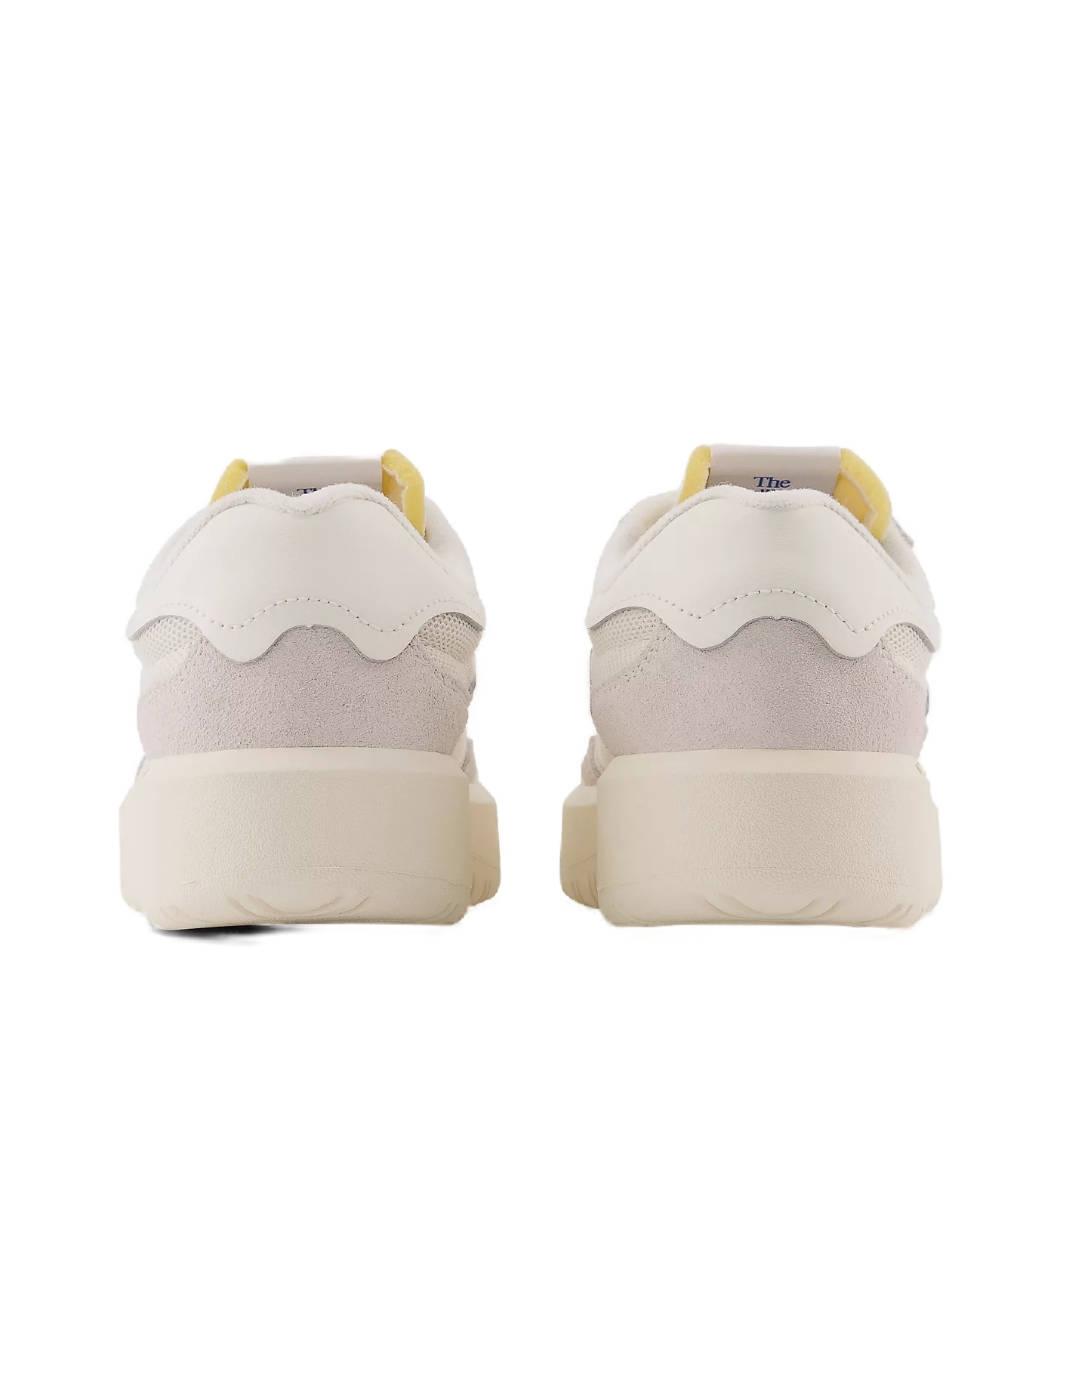 Zapatillas New Balance CT302 beige y detalles en gris mujer